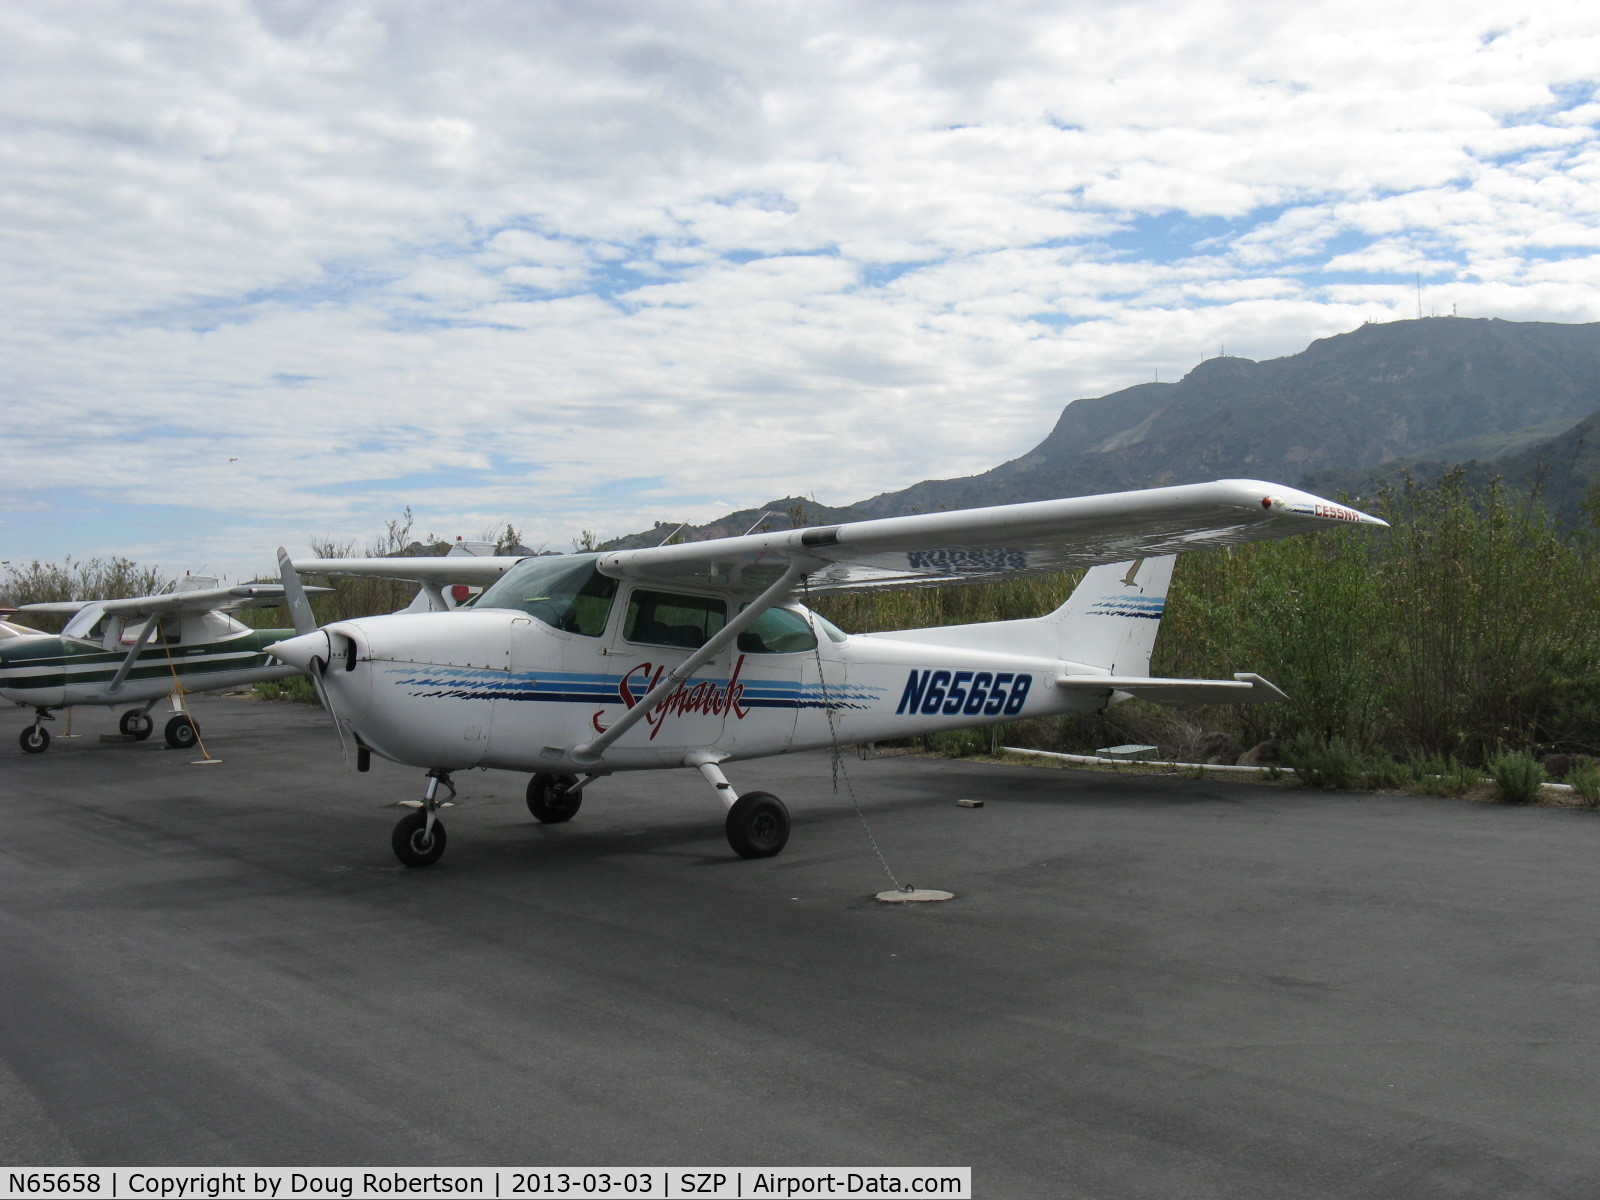 N65658, 1982 Cessna 172P C/N 17275804, 1982 Cessna 172P SKYHAWK, Lycoming O-320-D2J 160 Hp